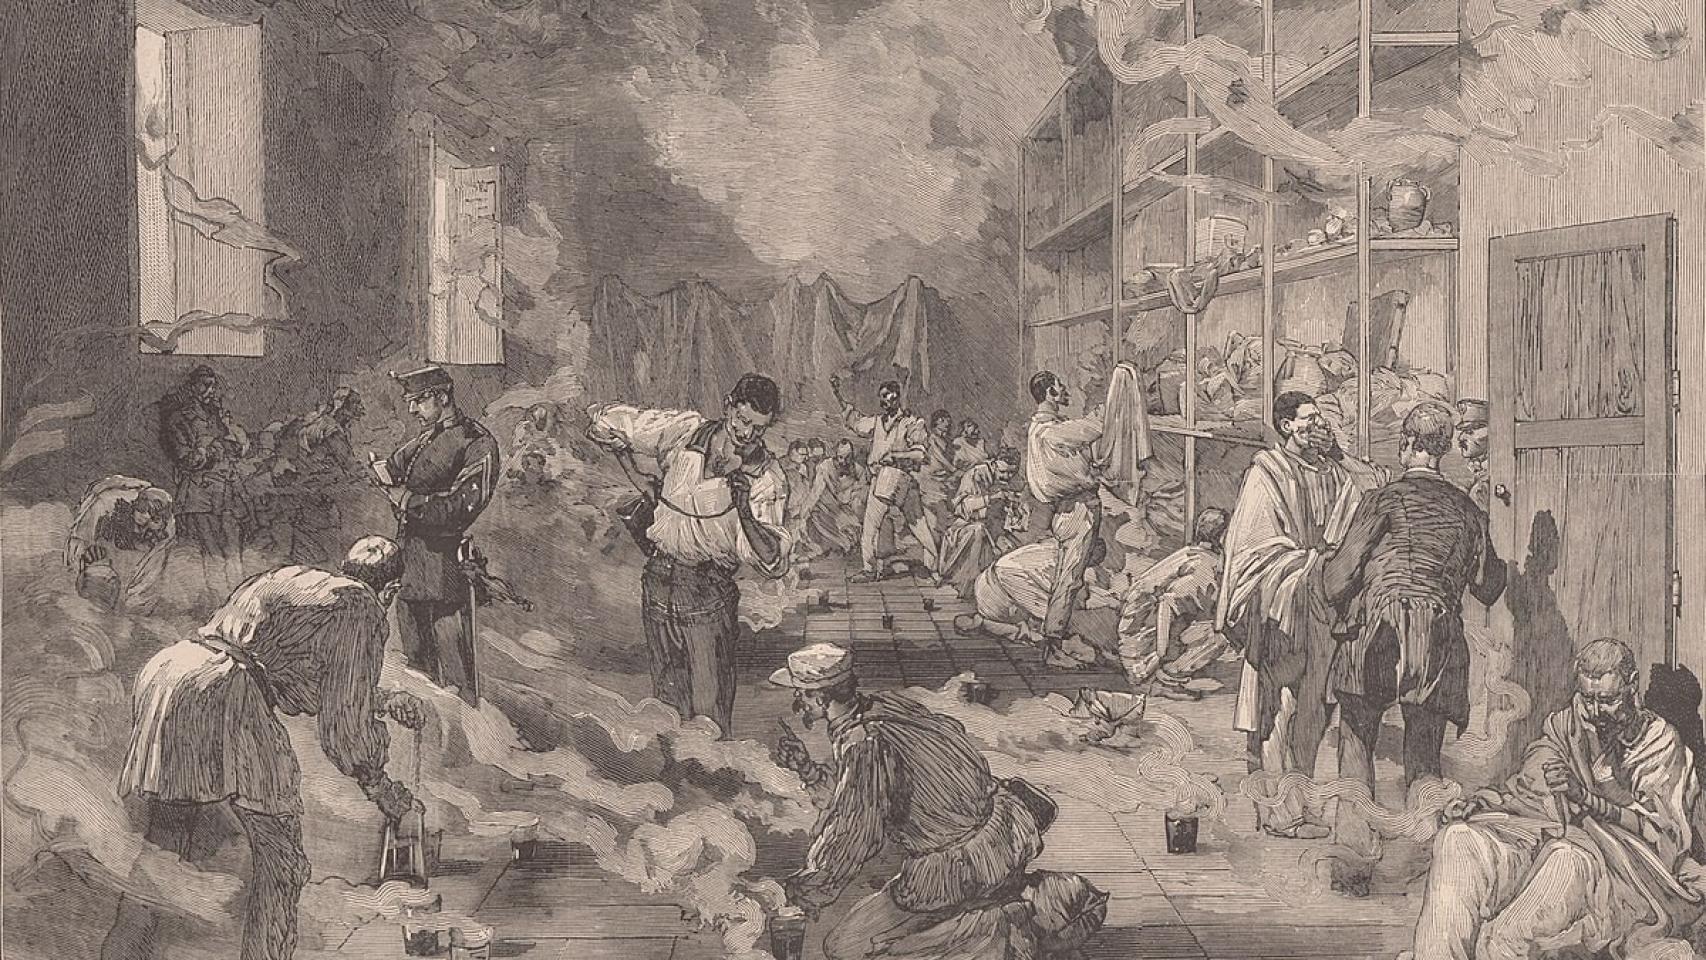 Ilustración de 'Le Monde Illustré'  de soldados españoles enfermos de fiebre amarilla. 1878